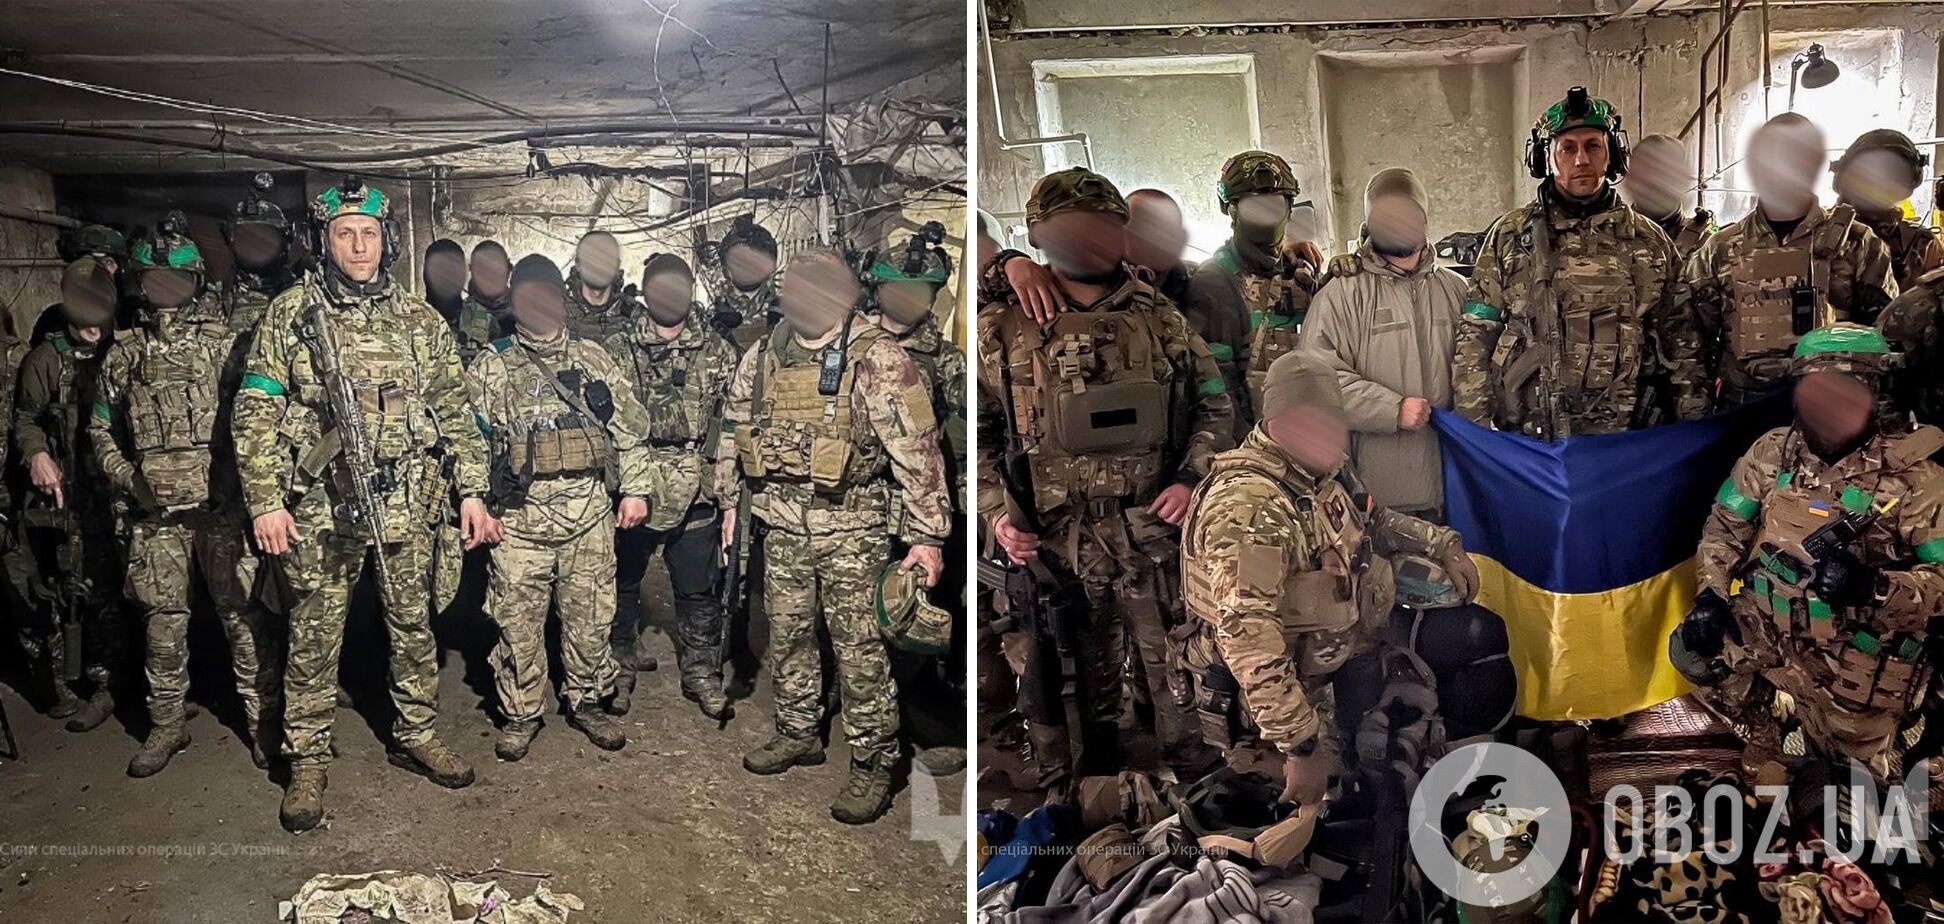 Командующий ССО Украины посетил Бахмут, за который идут тяжелые бои: какая сейчас ситуация в городе? Фото